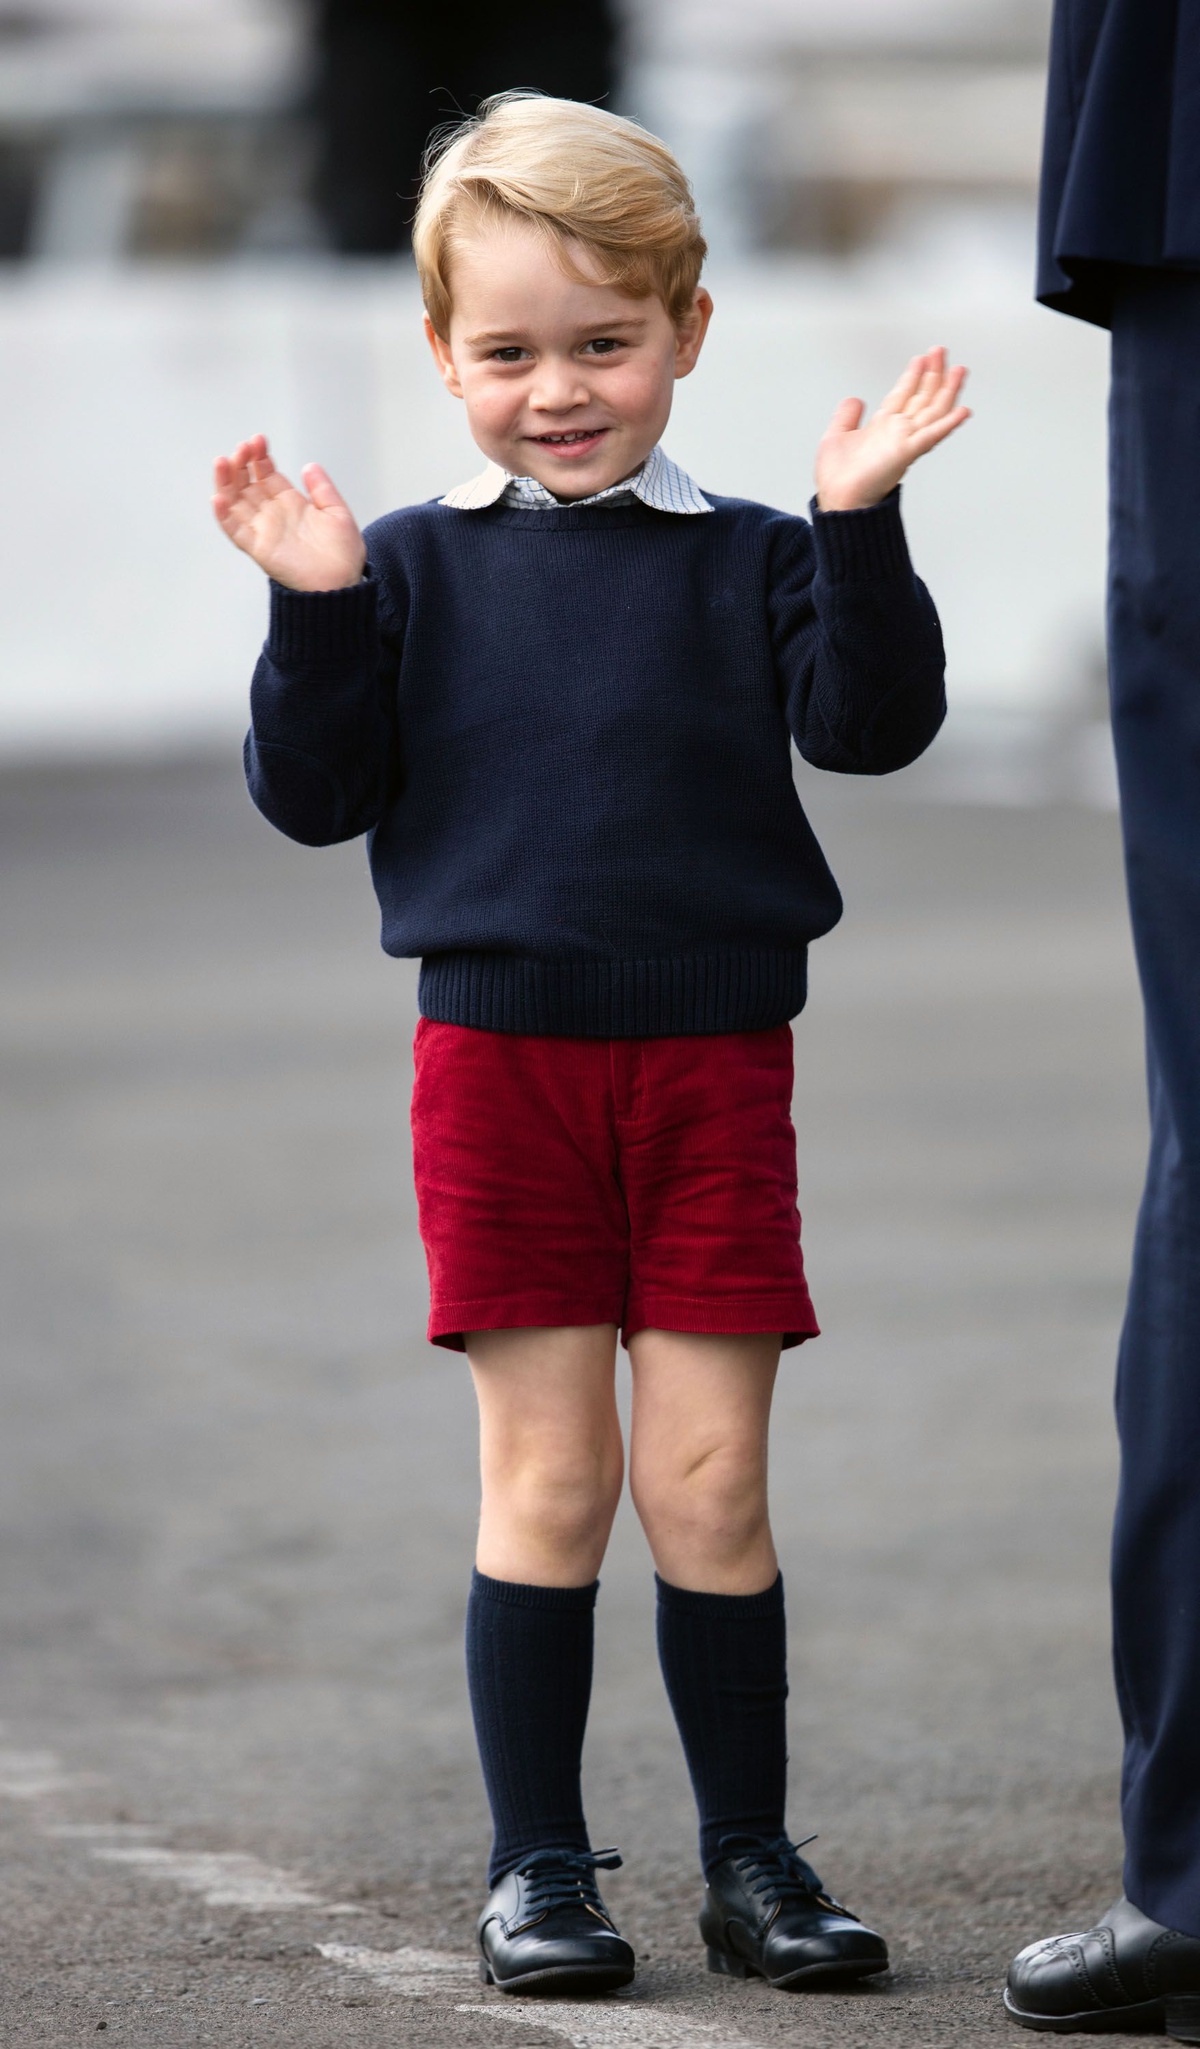 Chiếc quần ngắn tuy đơn giản nhưng lại mang ý nghĩa khẳng định vị thế của hoàng tử George vì quần dài chủ yếu dành cho các bé ở tầng lớp khác và đàn ông trưởng thành.